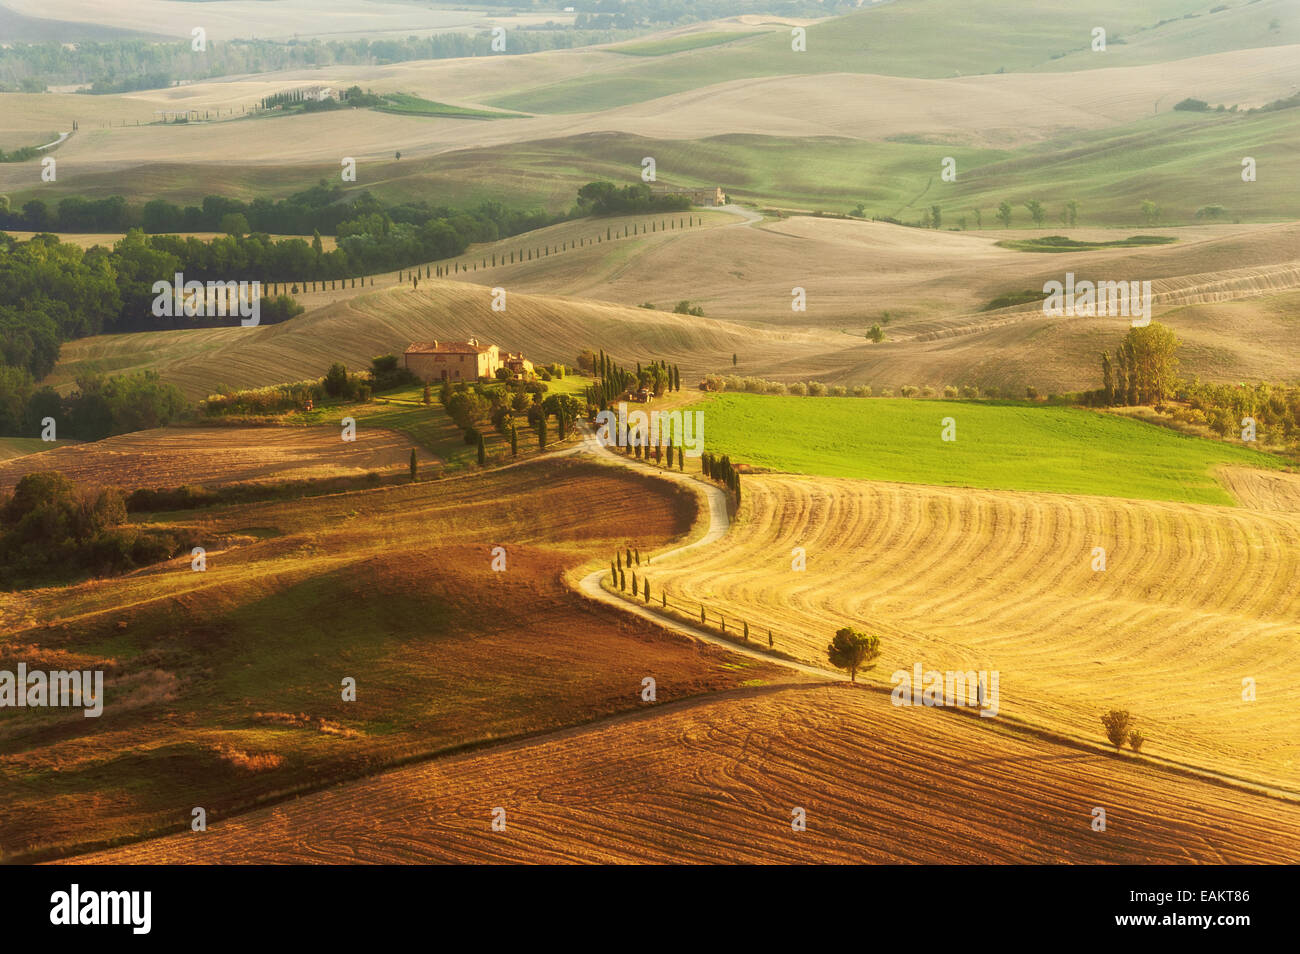 Vue sur la campagne dans le paysage de la Toscane, Italie Banque D'Images